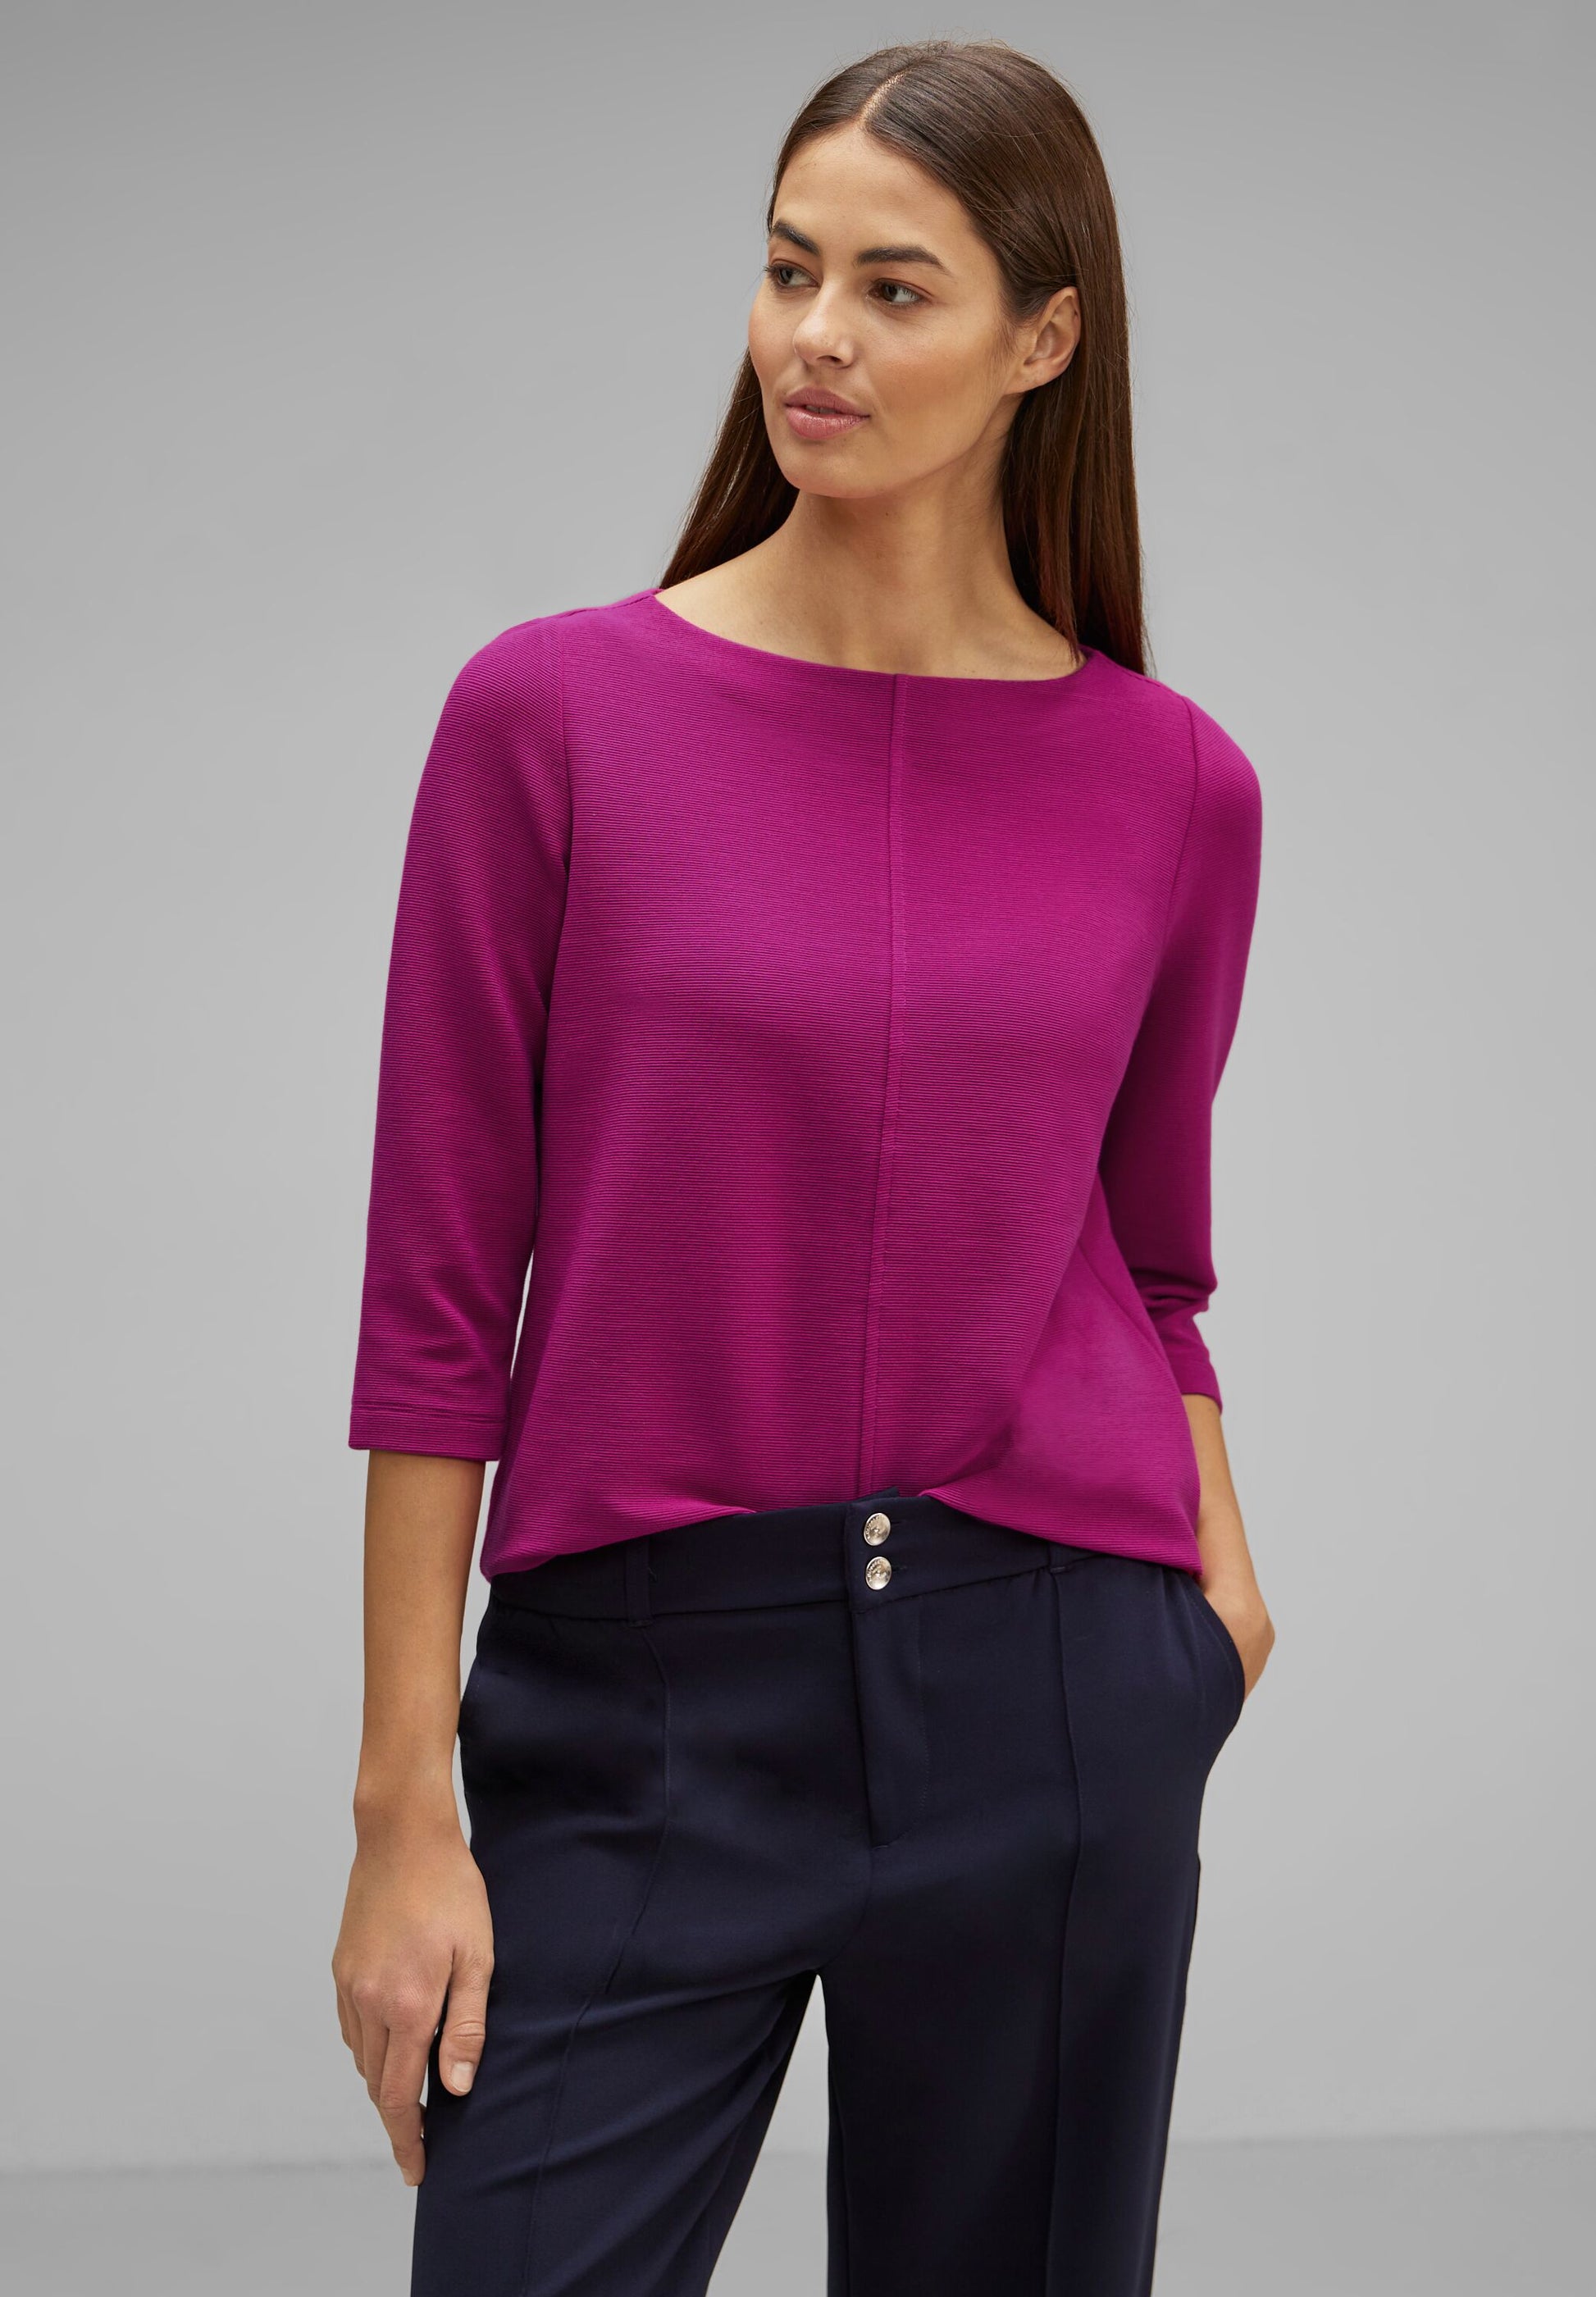 Street cozy – Shirt One - bright Mode Struktur feiner TWISTY mit - pink